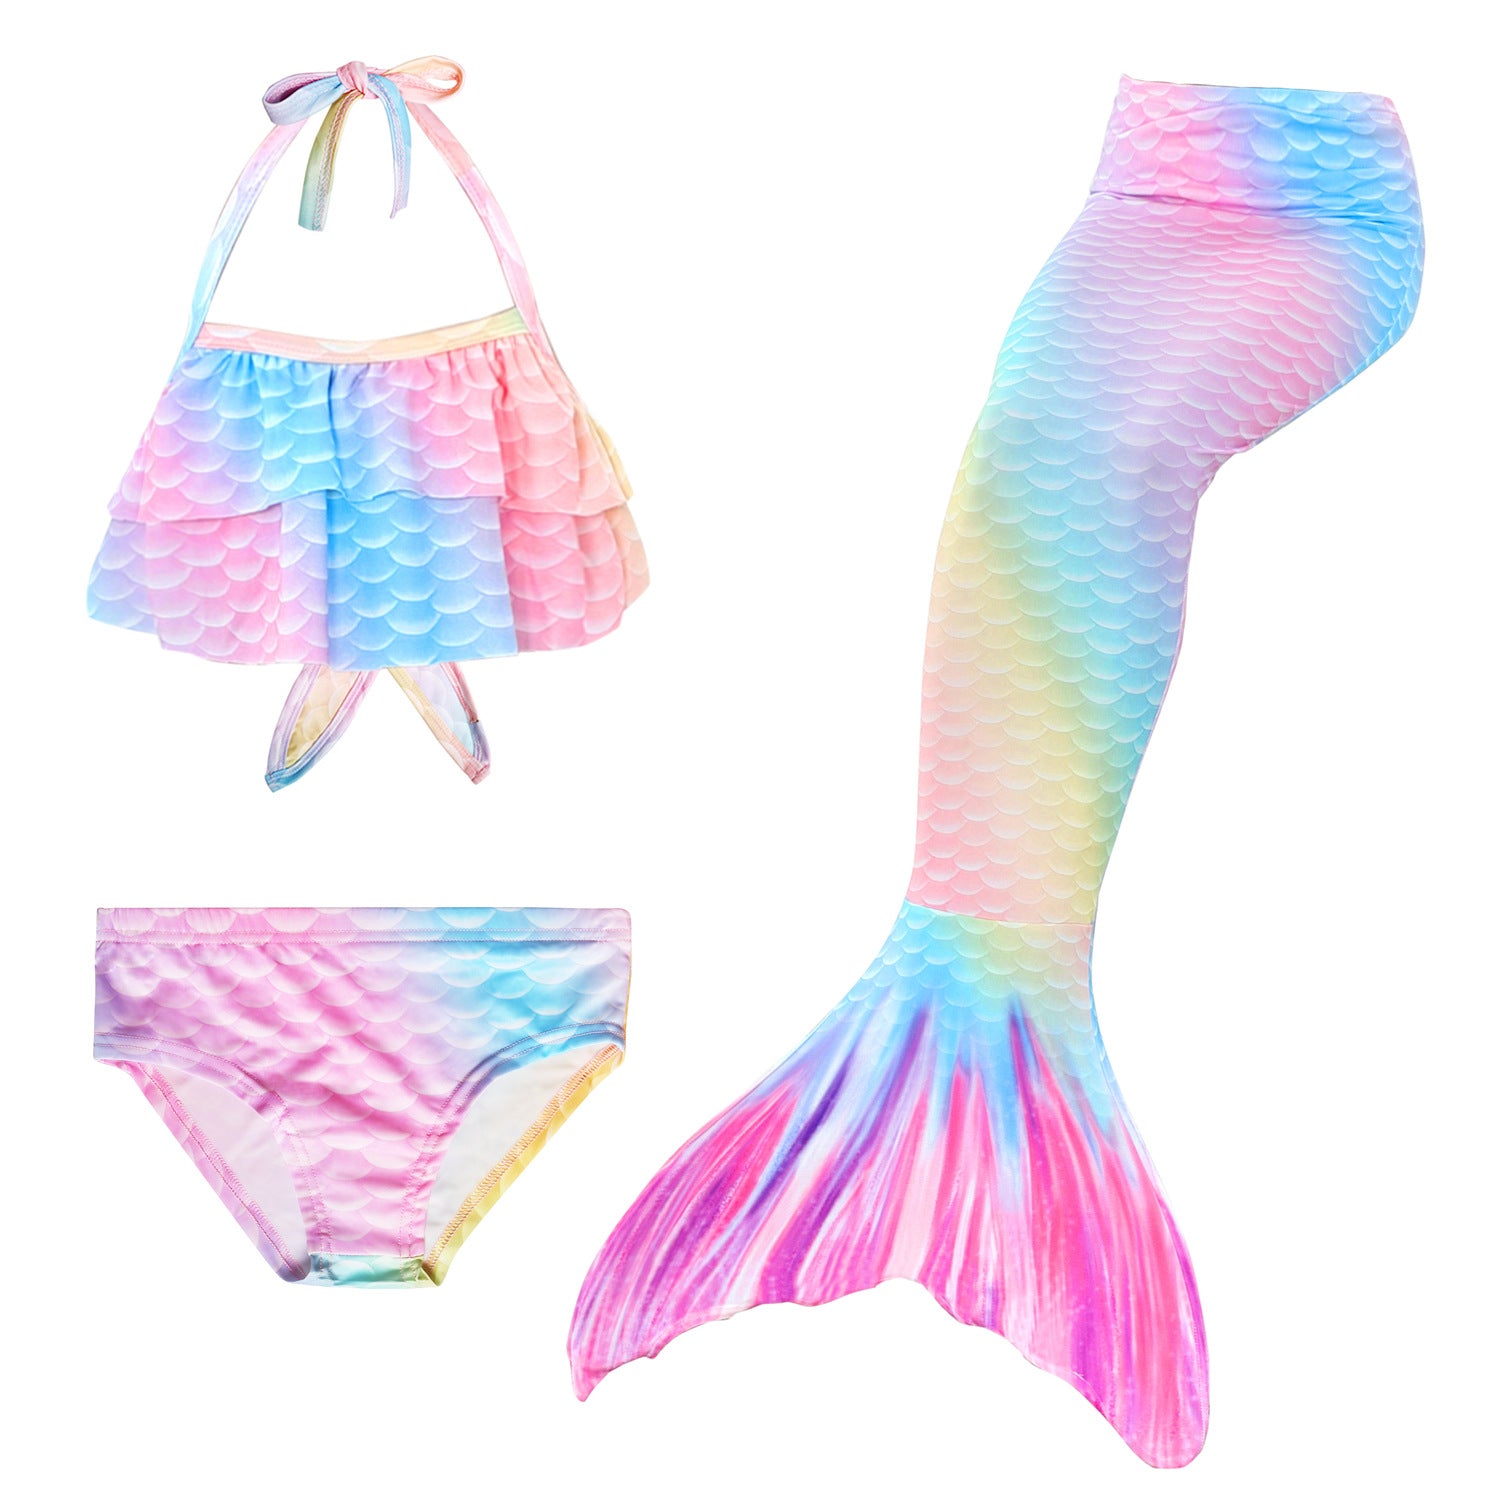 Tankini Swimsuits for Women by Brigitewear